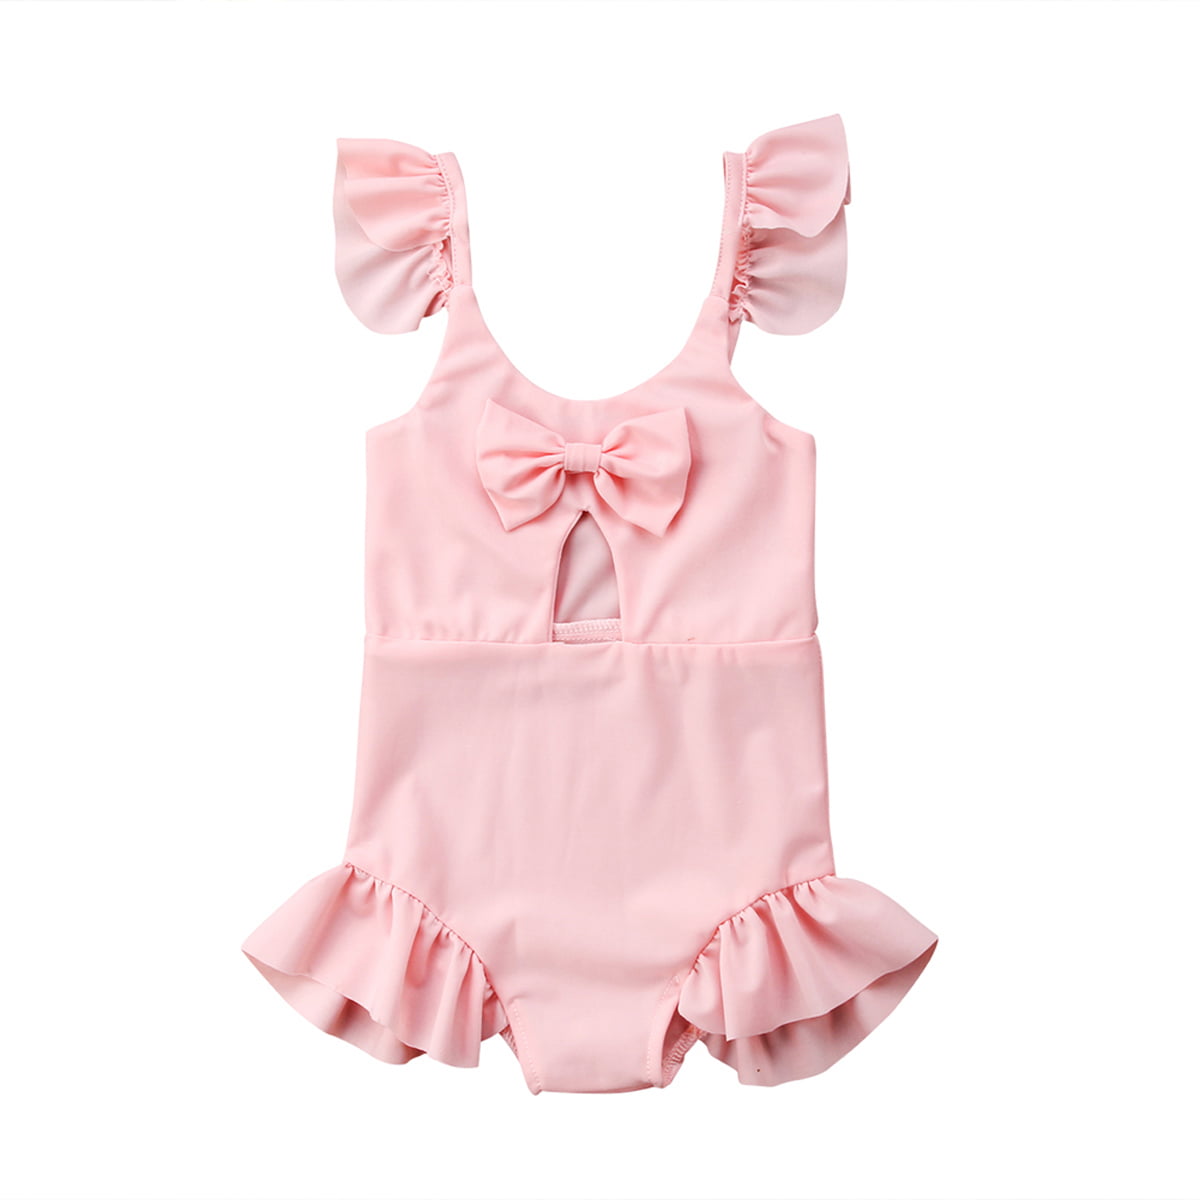 Xiaodriceee - Xiaodriceee Cute Toddler Baby Kids Girls Bikini Swimwear ...